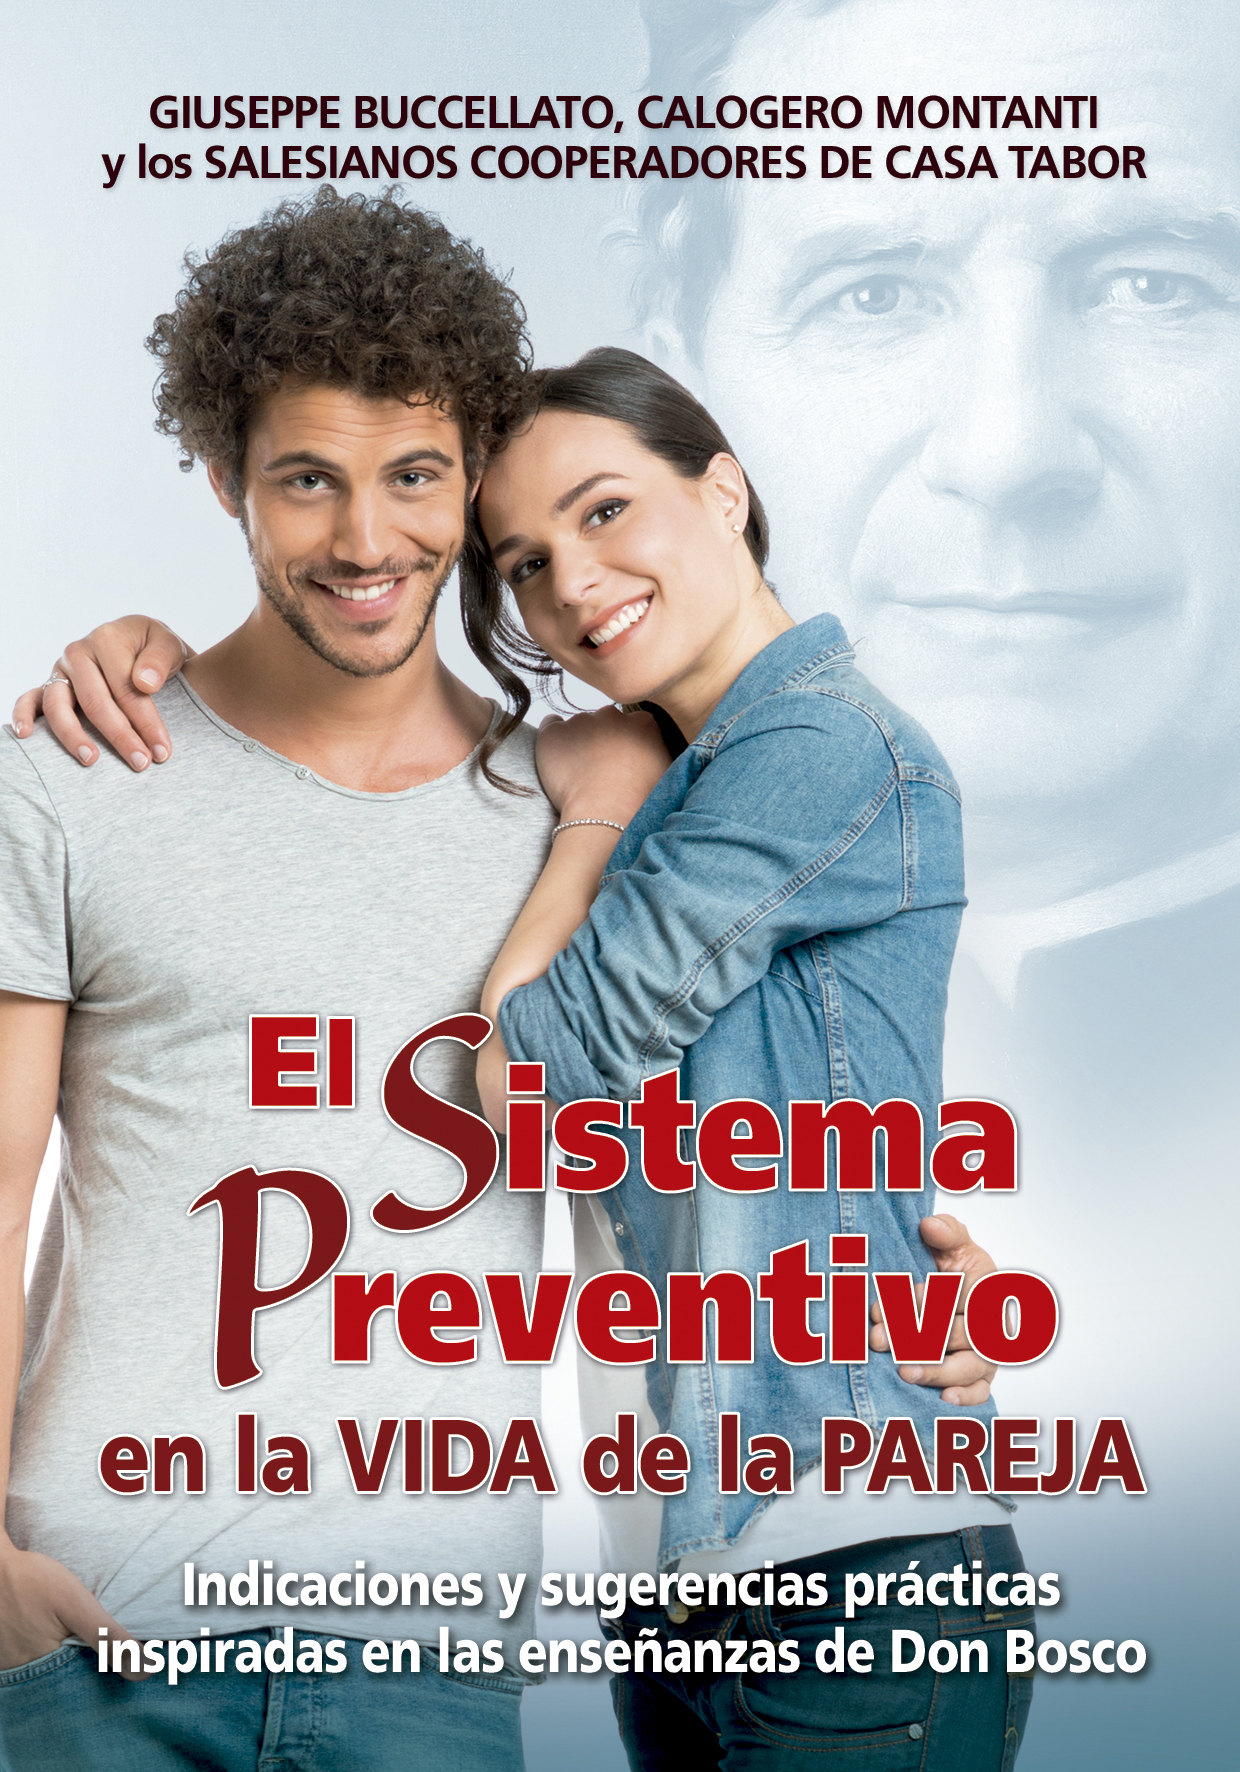 El Sistema Preventivo en la vida de pareja   «Indicaciones y sugerencias prácticas inspiradas en las enseñanzas de Don Bosco»